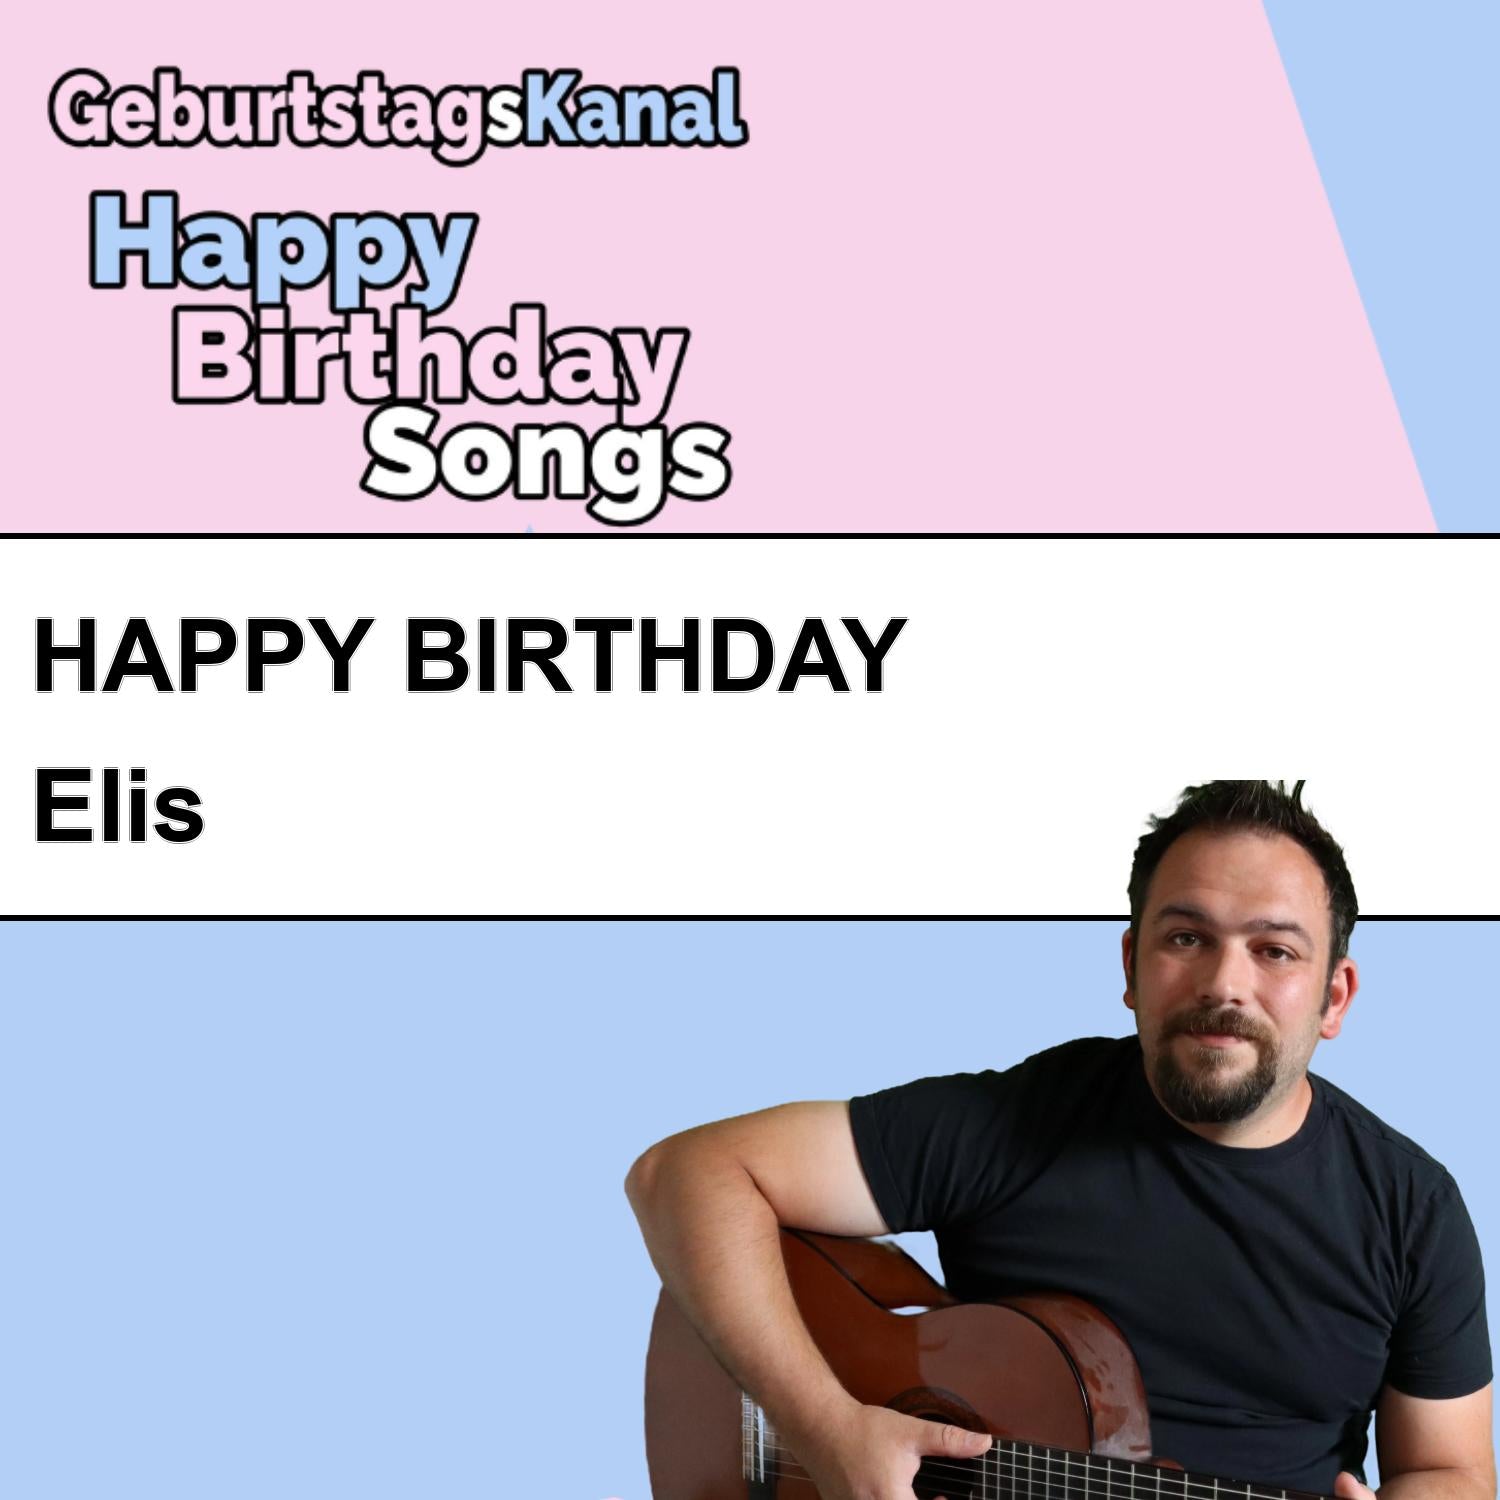 Produktbild Happy Birthday to you Elis mit Wunschgrußbotschaft